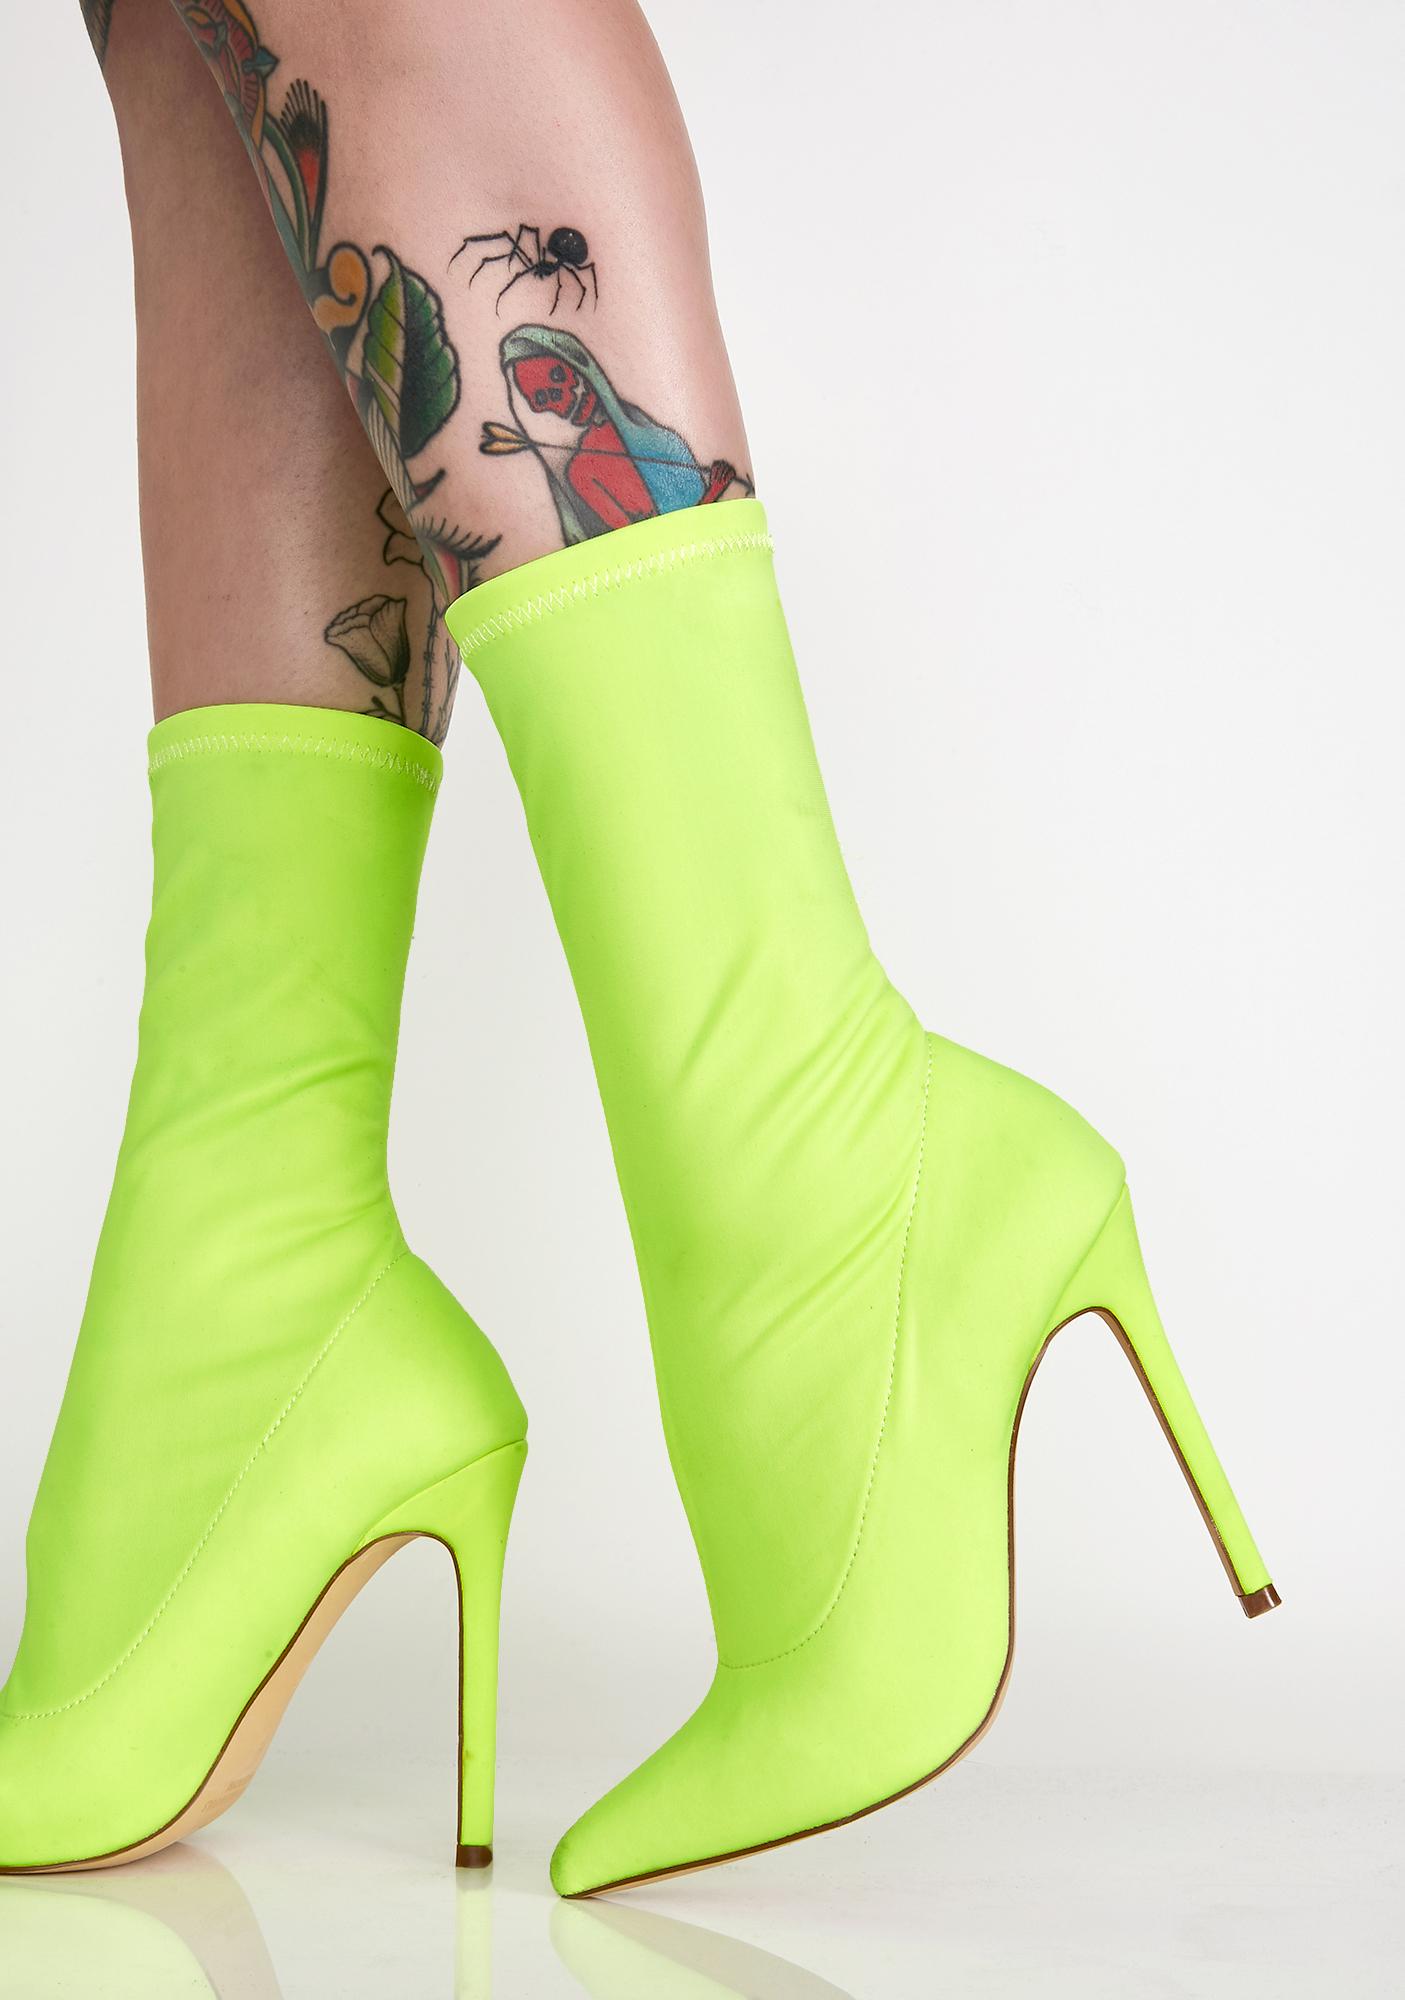 neon bootie heels